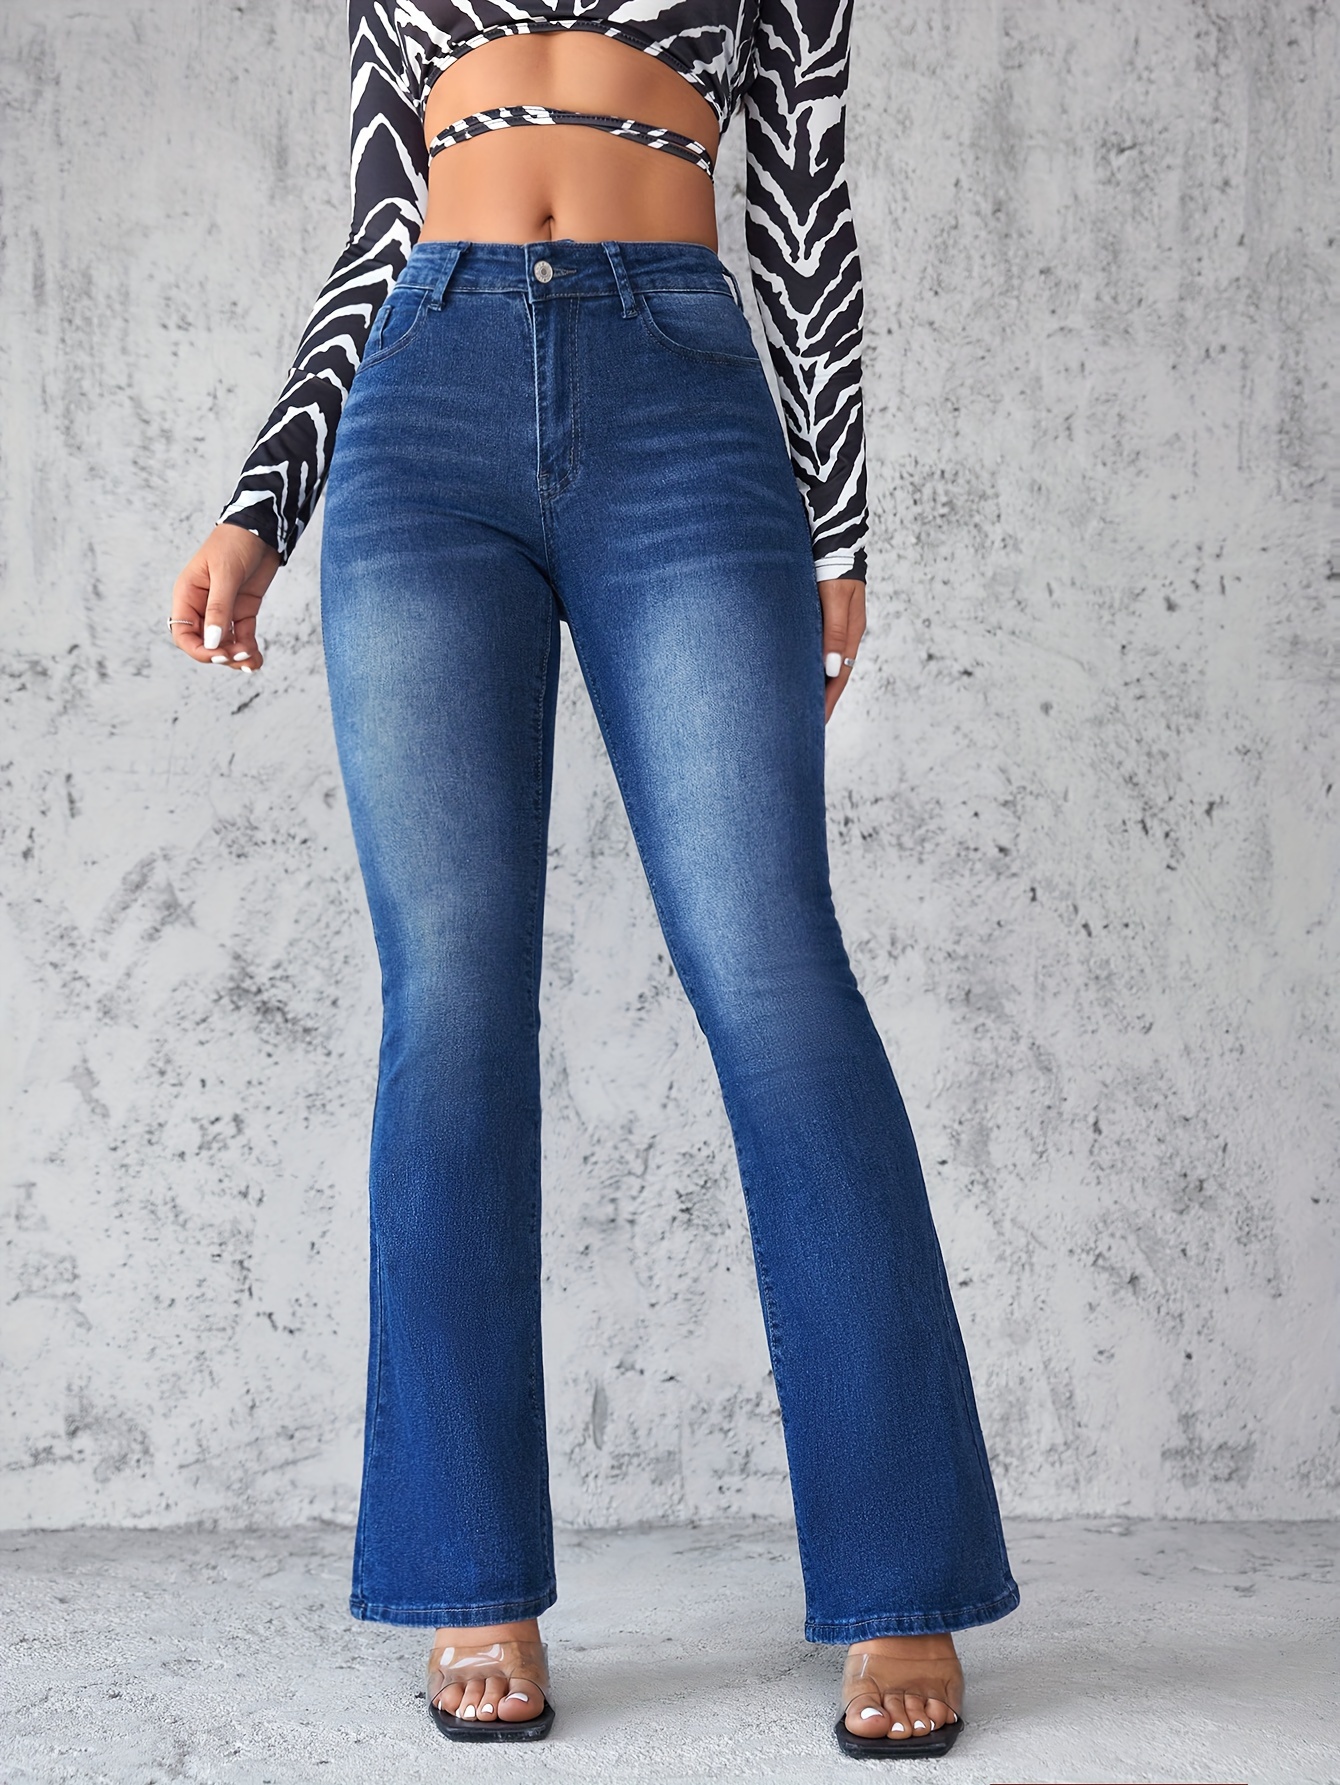 Simple Design Washed Bootcut Jeans, Slant Pockets Versatile Denim Pants,  Women's Denim Jeans & Clothing